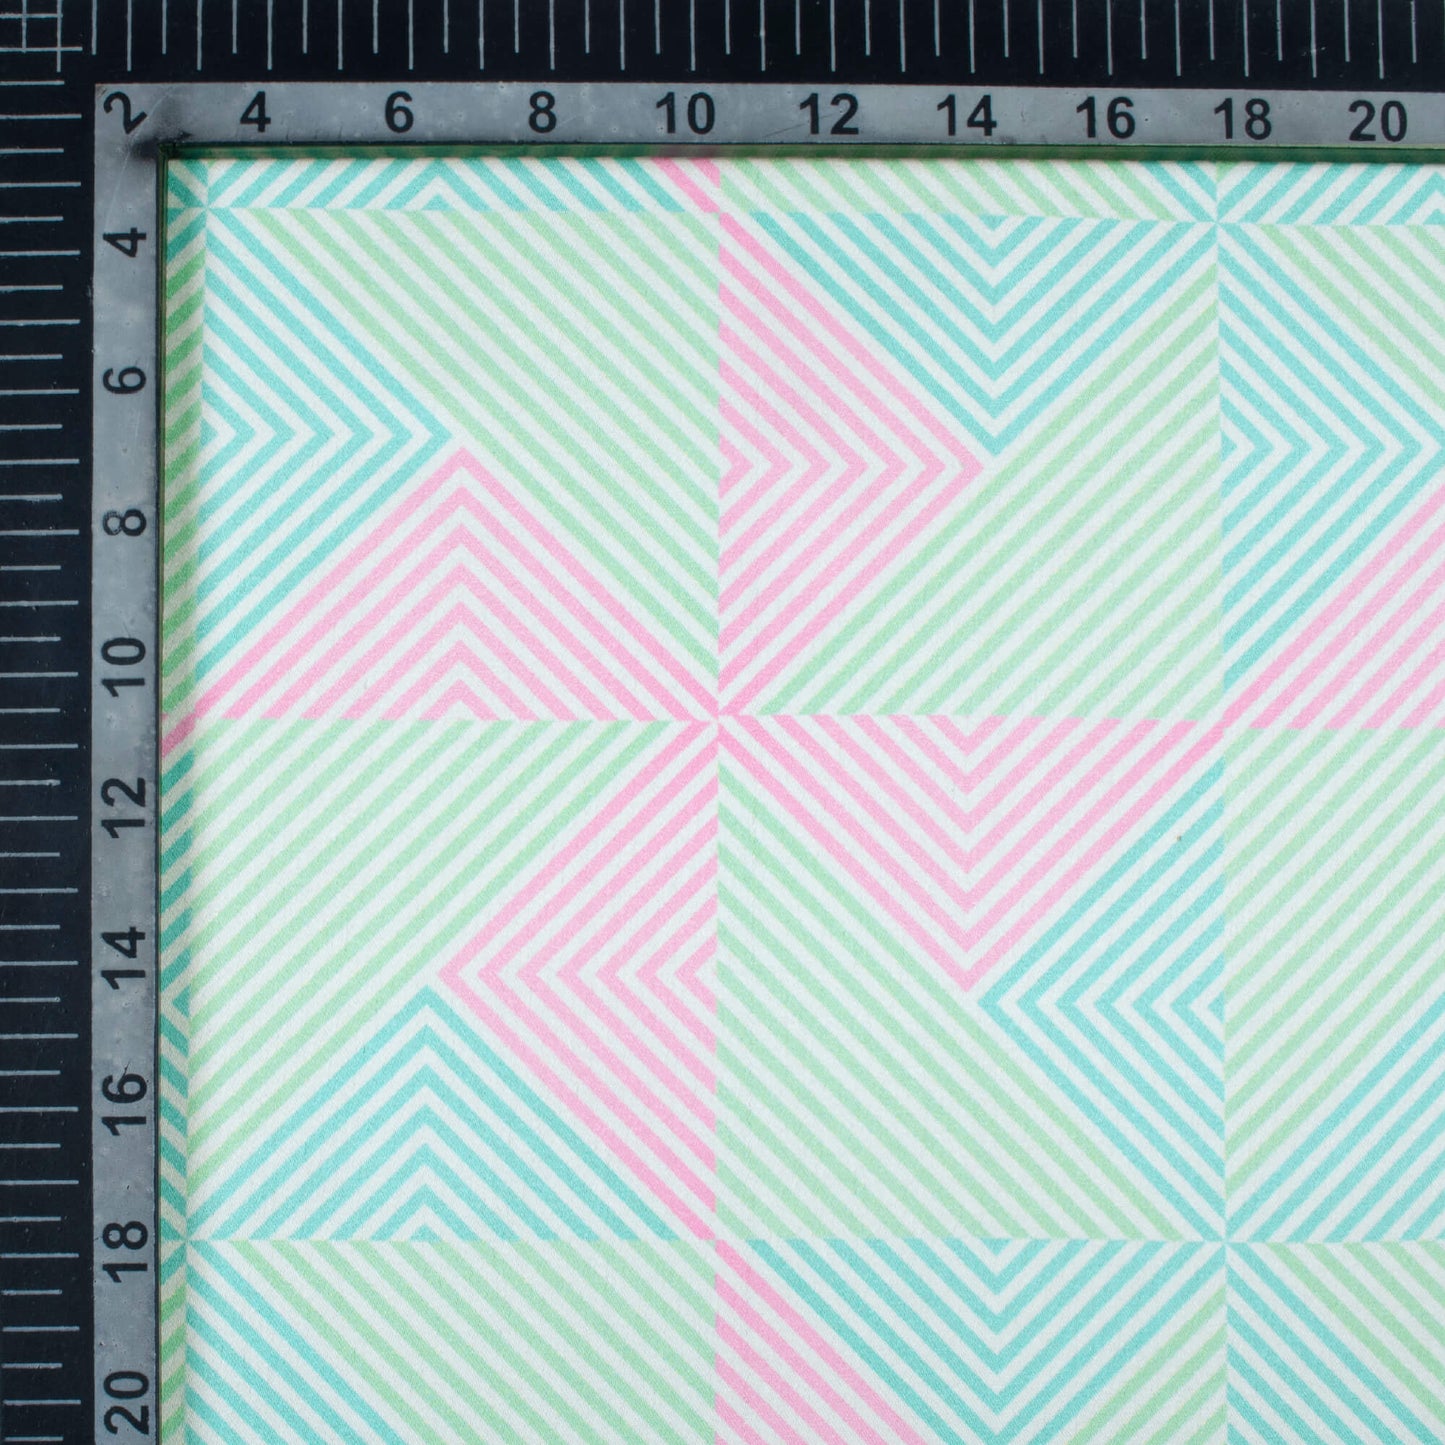 Mint Green And Taffy Pink Geometric Pattern Digital Print Japan Satin Fabric